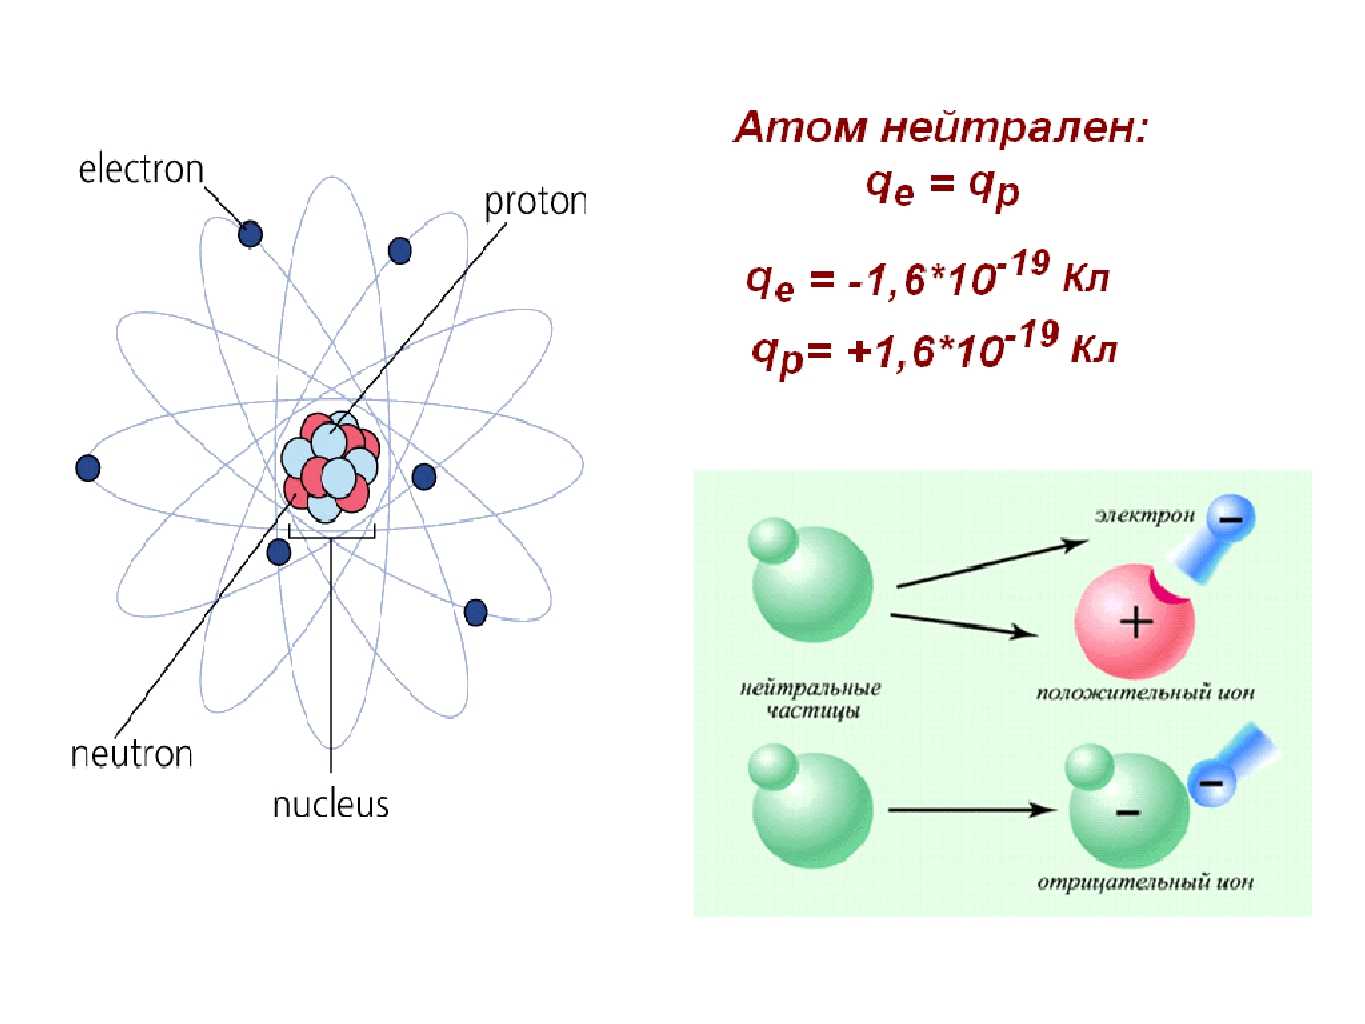 В ядре атома алюминия протонов